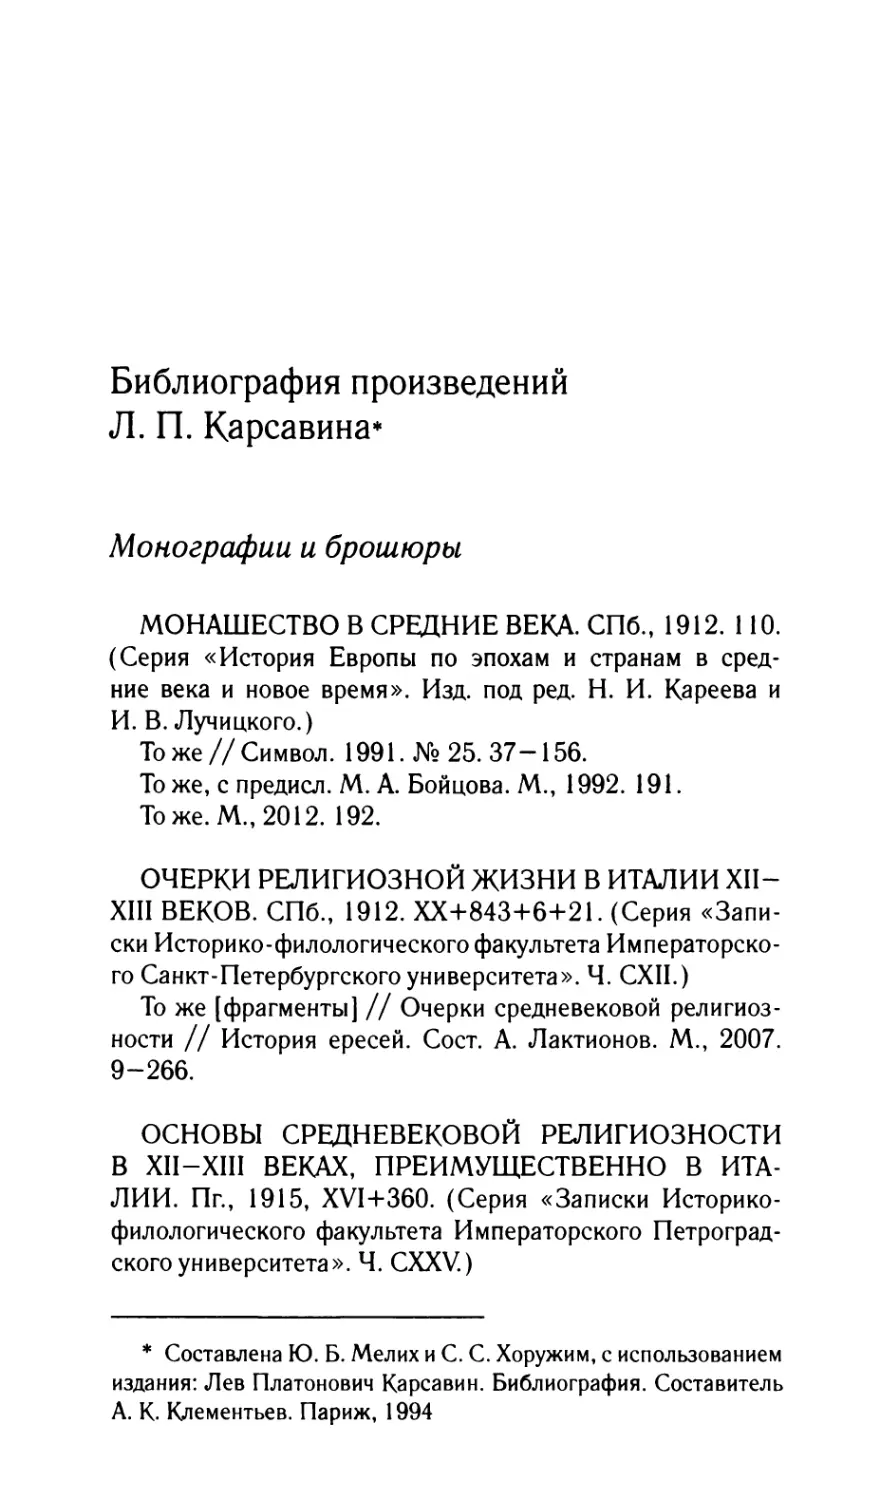 Библиография произведений Л.П. Карсавина